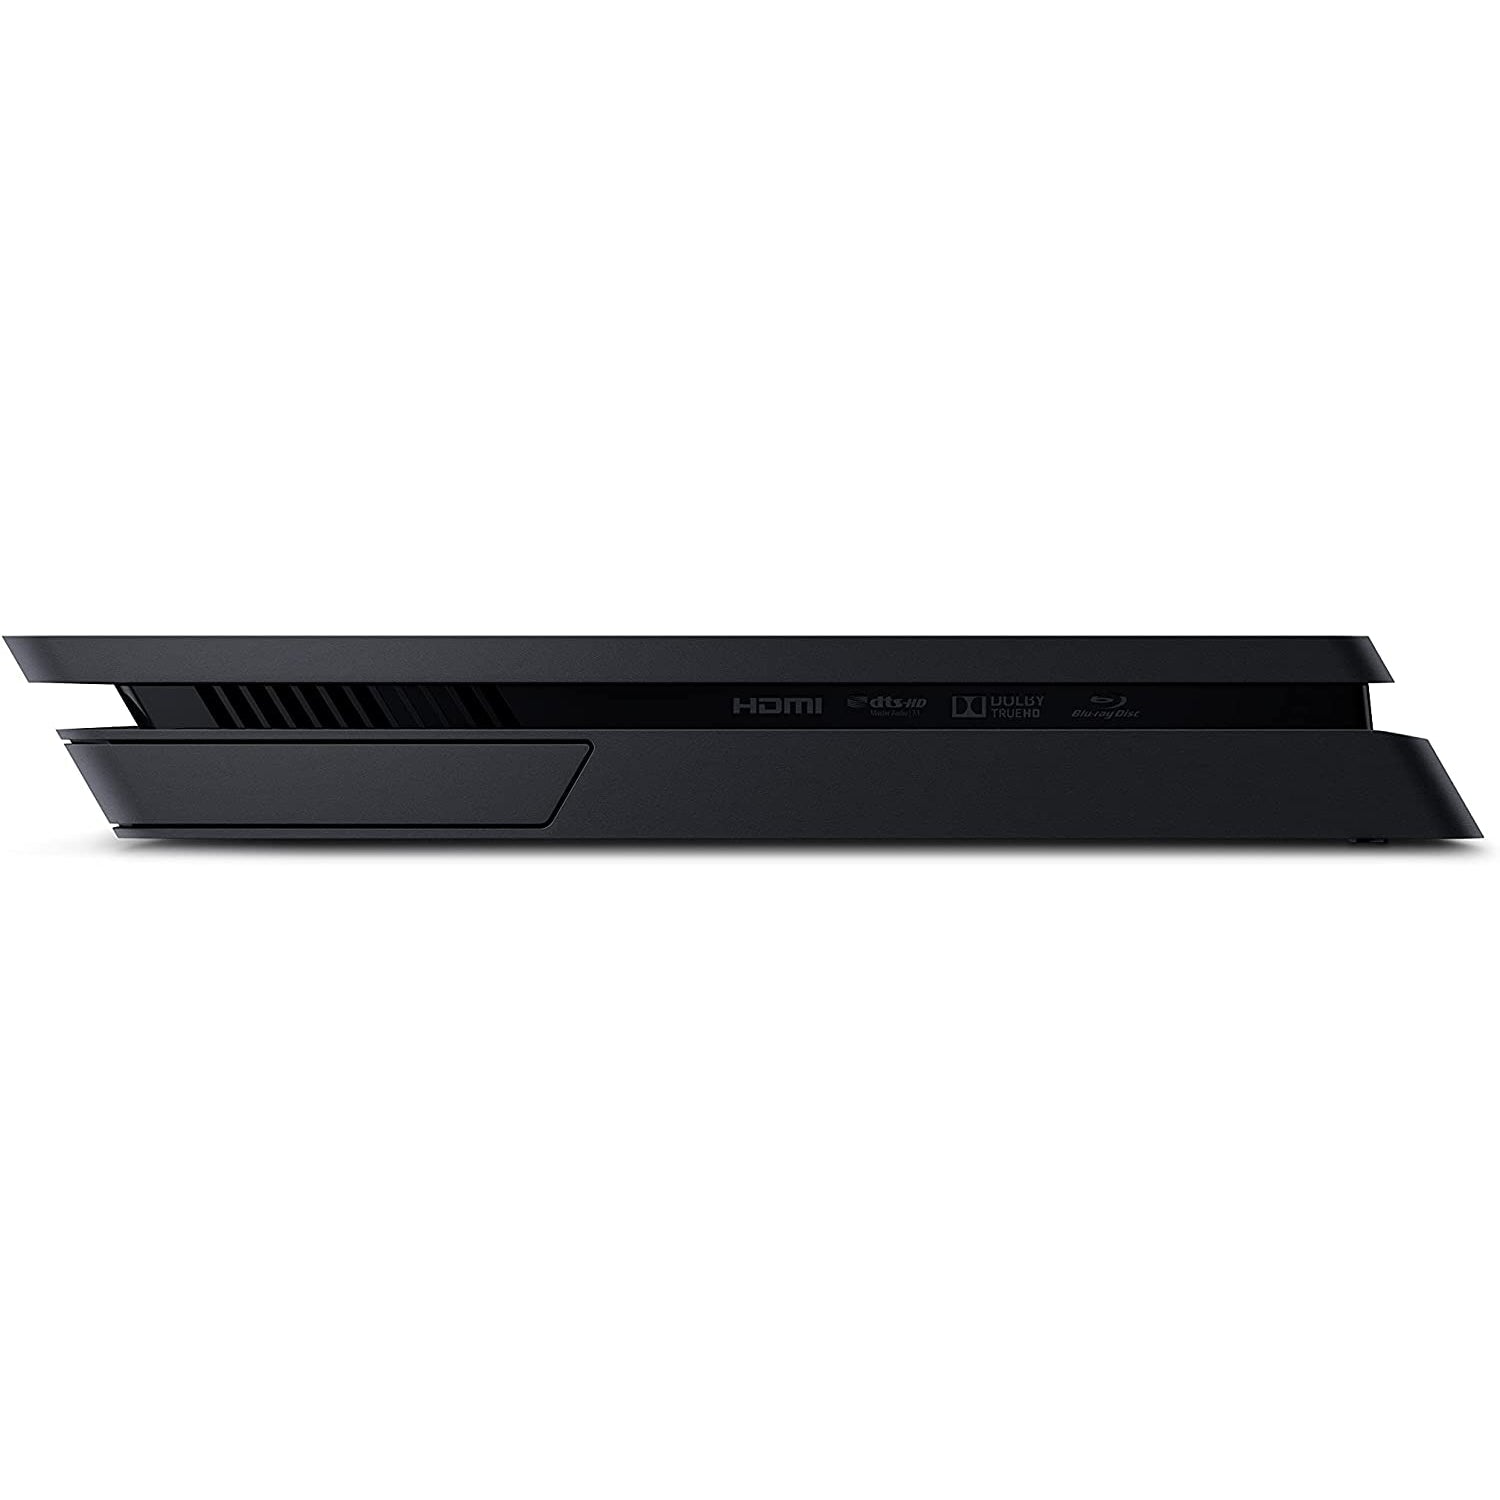 Sony PlayStation 4 Slim Console 1TB - Black - Refurbished Good